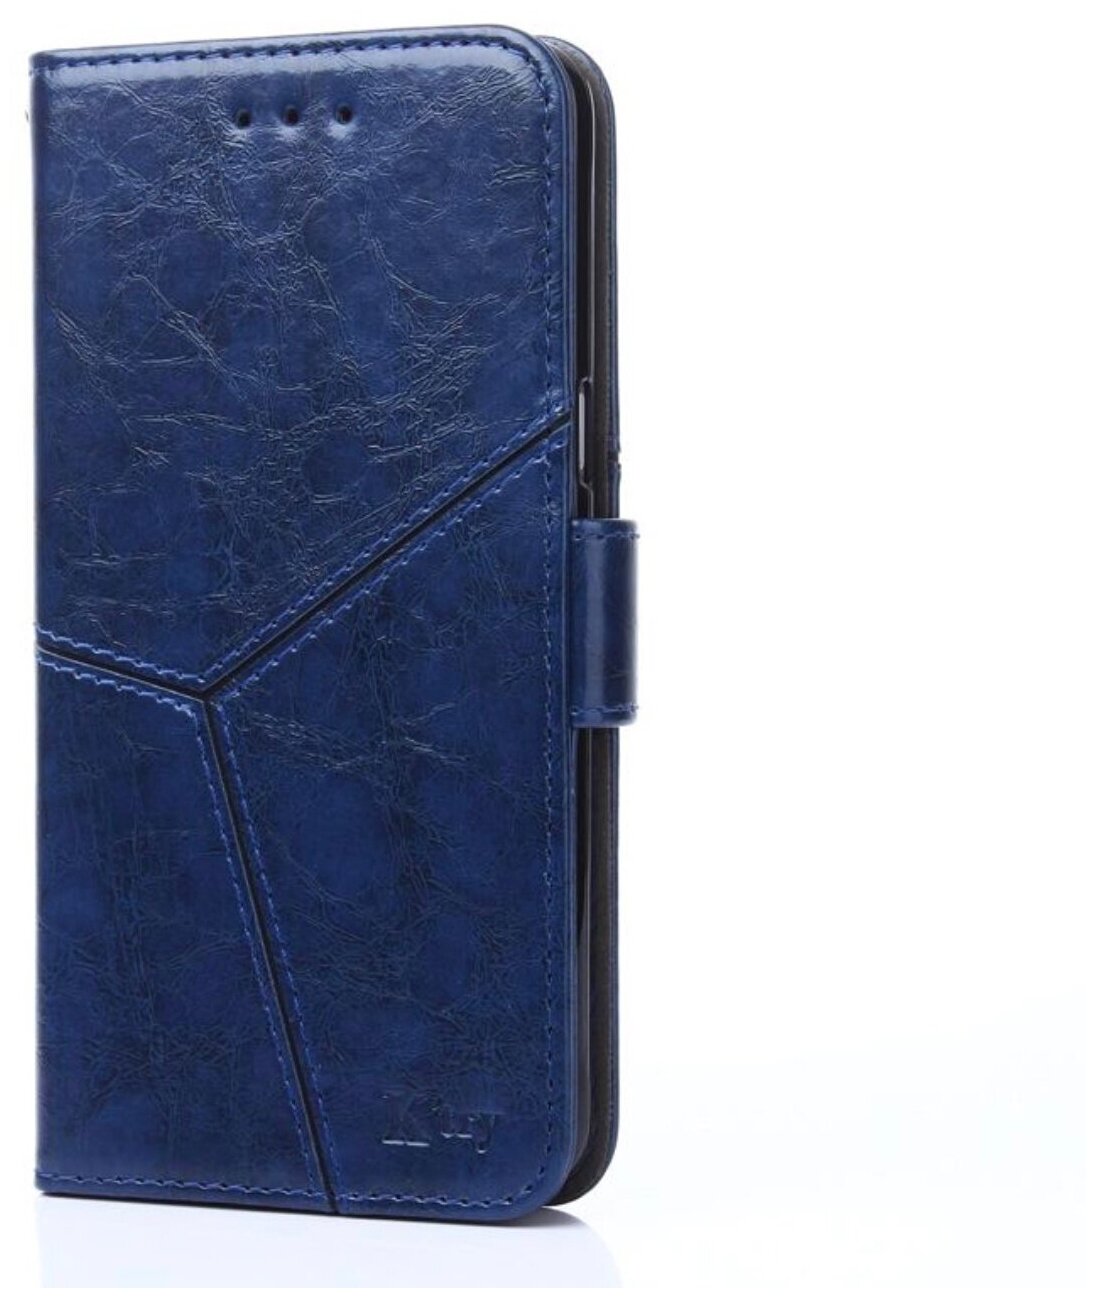 Чехол-книжка MyPads для Nokia 5.1 прошитый по контуру с необычным геометрическим швом синий